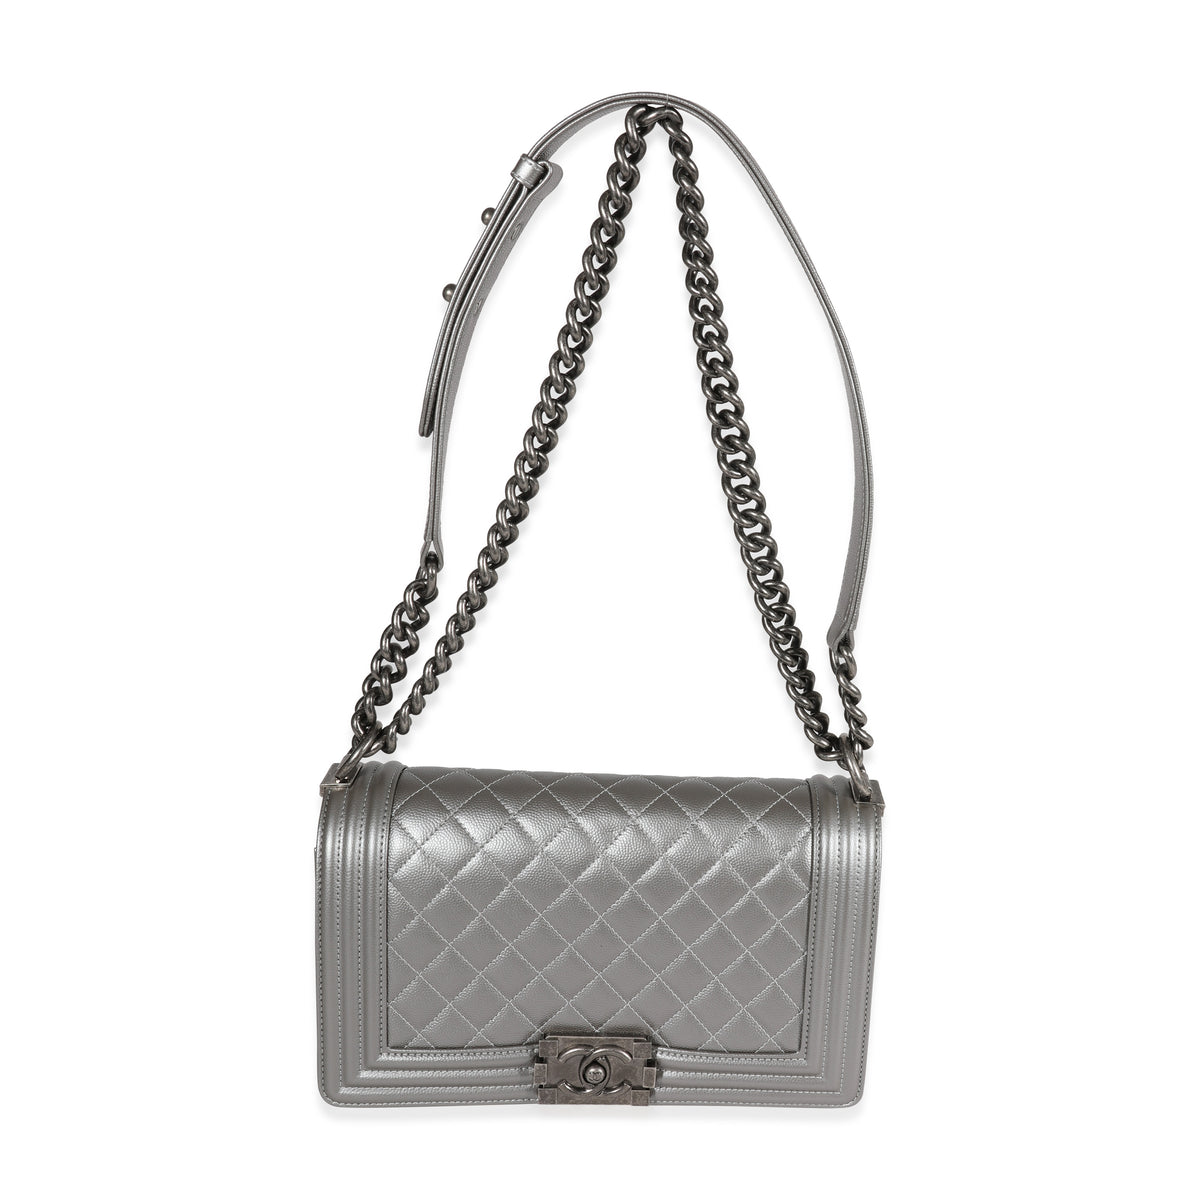 Chanel Silver Quilted Caviar Medium Boy Bag